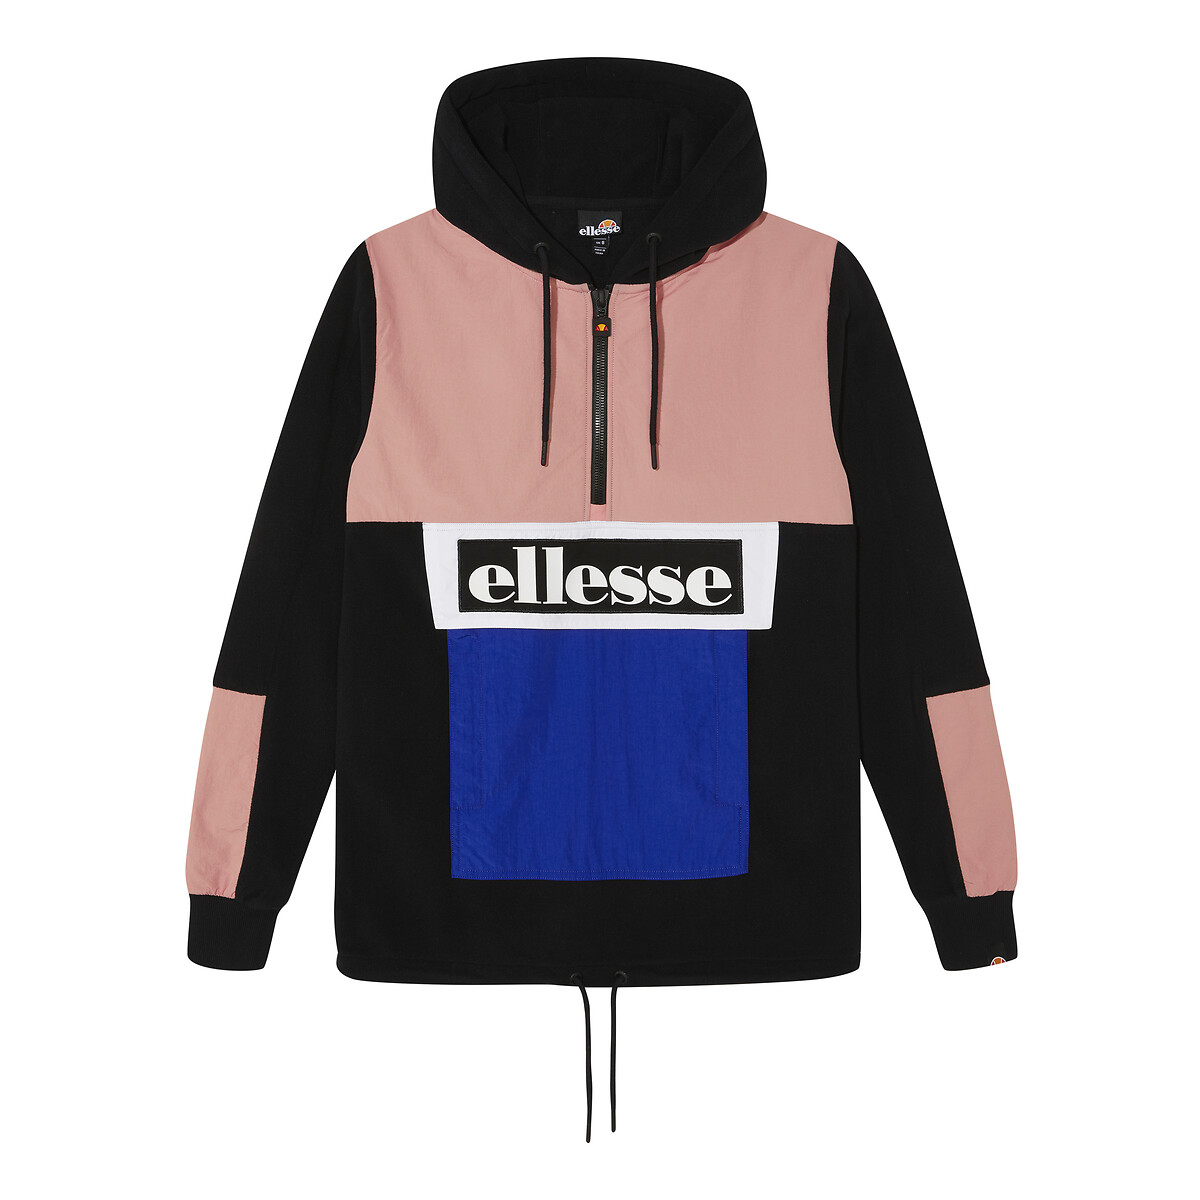 Uitgebreid Aja dinosaurus Sweater met kap, logo vooraan zwart/roze/blauw Ellesse | La Redoute